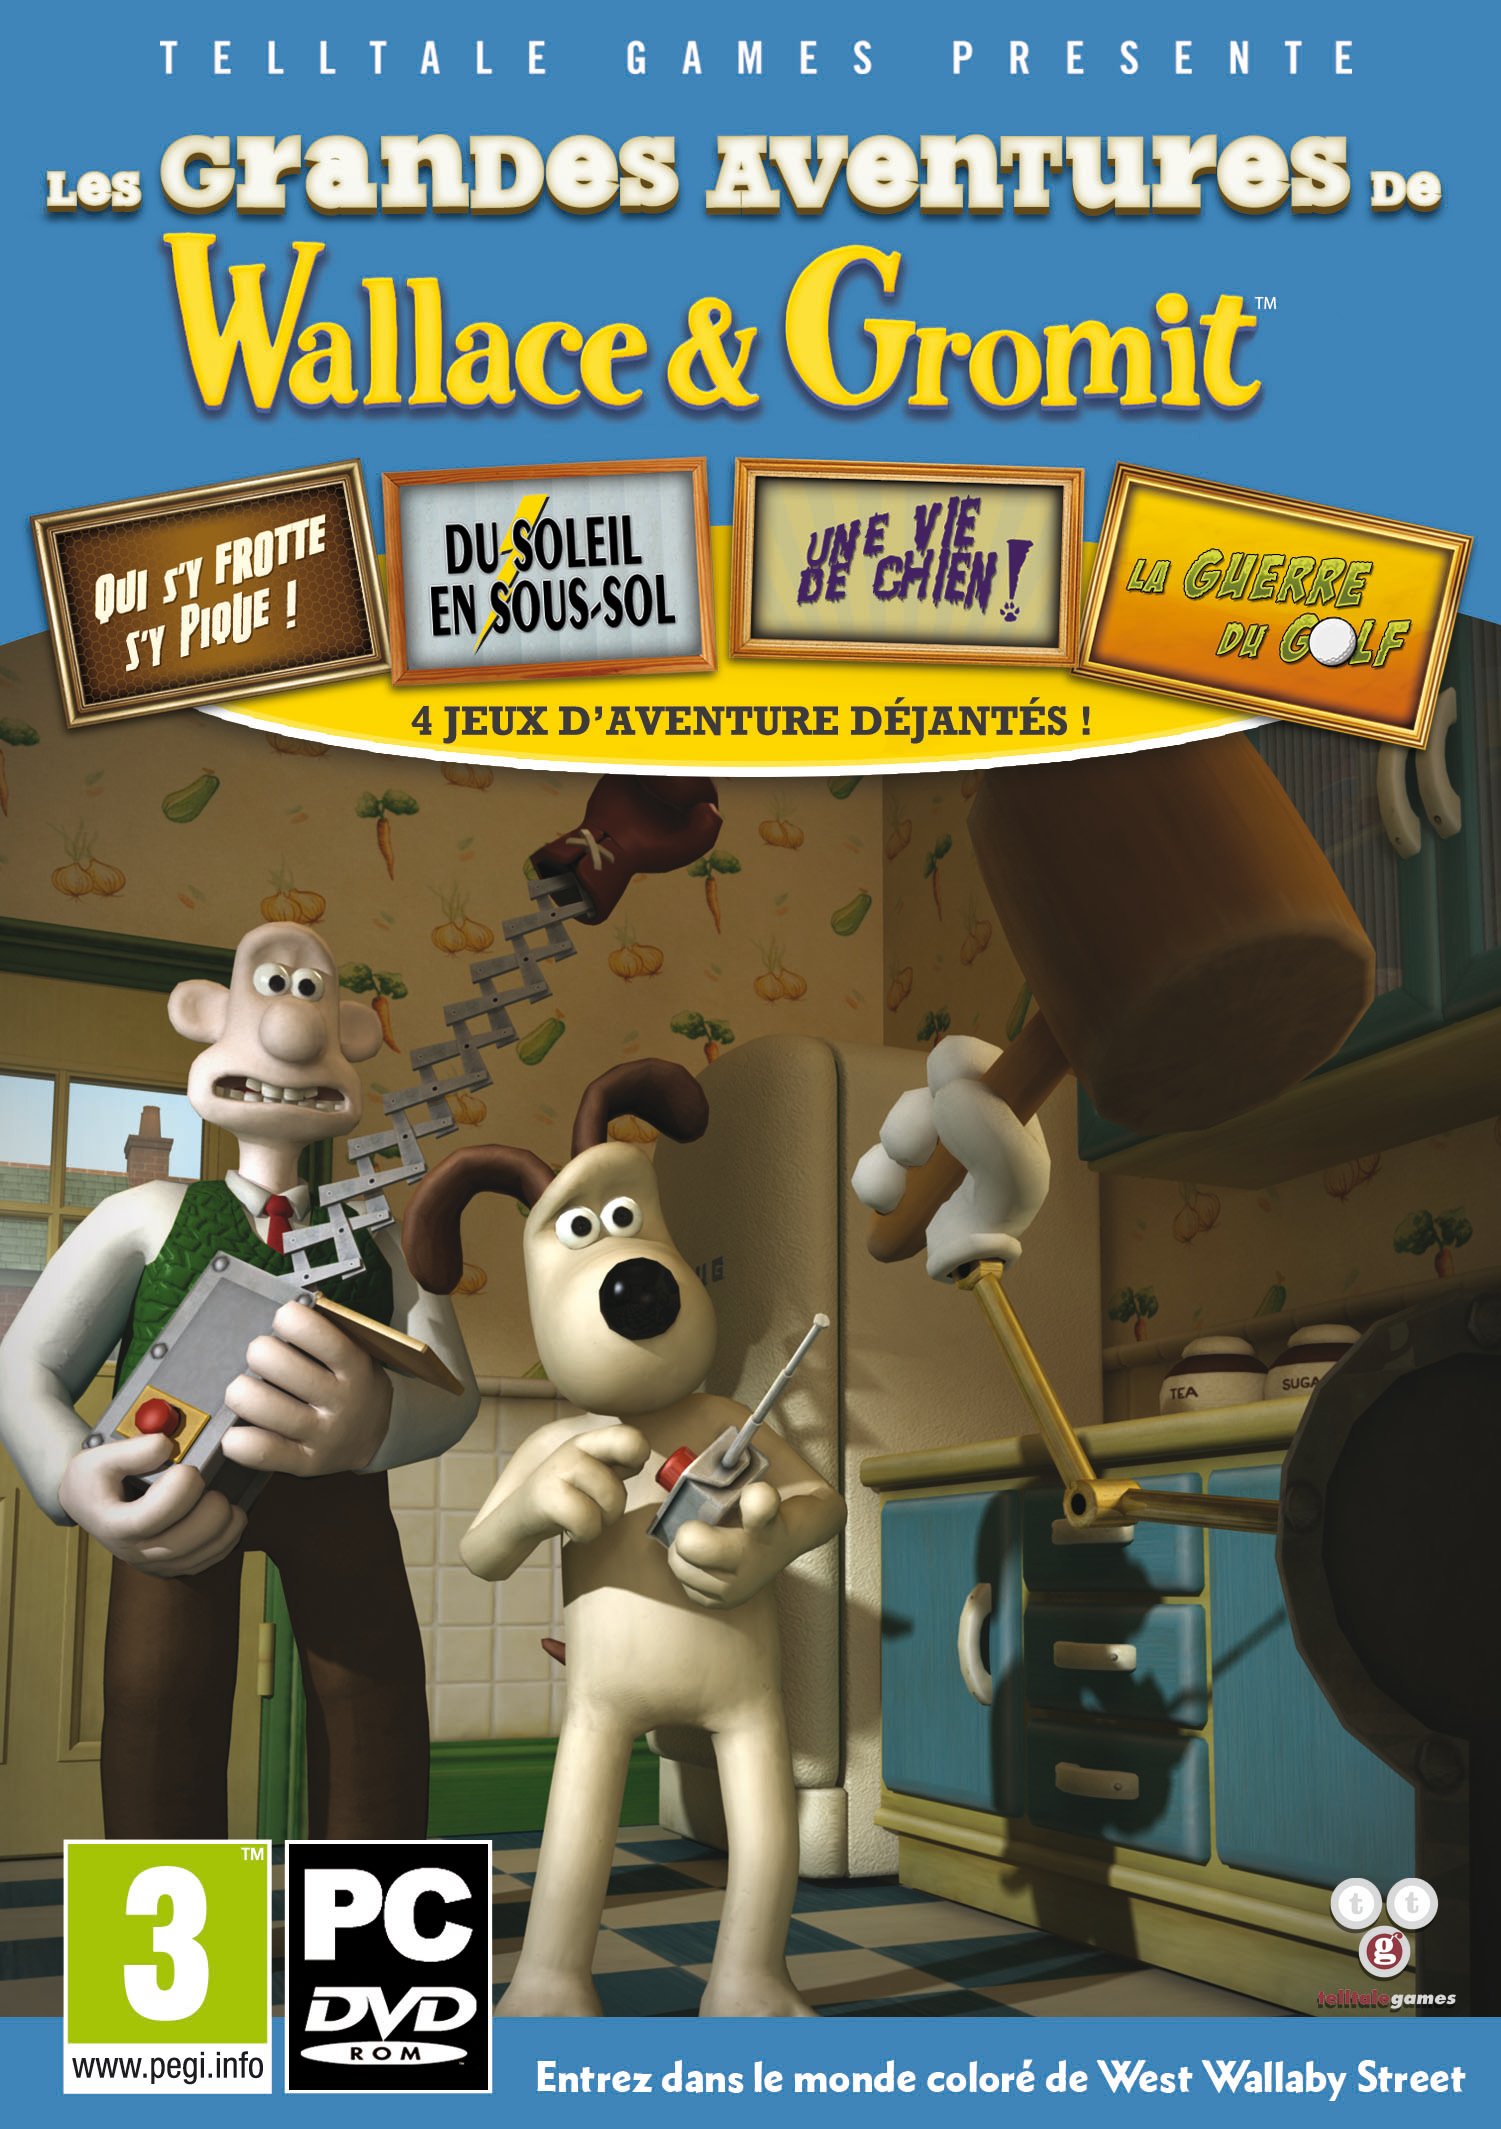 Les grandes aventures de Wallace & Gromit